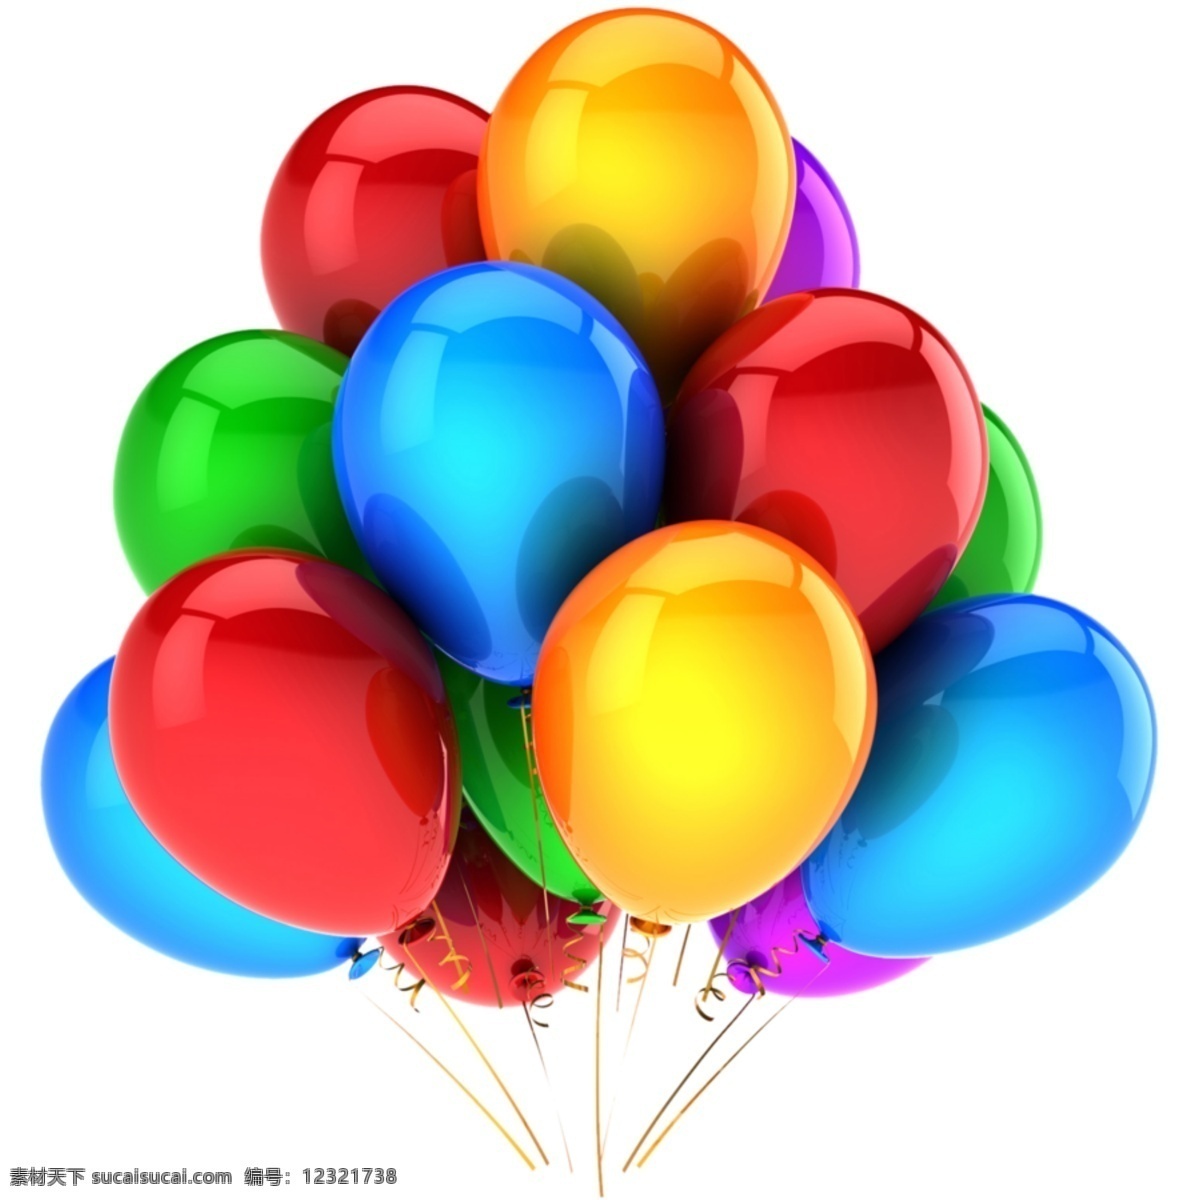 光泽 彩色 气球 插图 web 彩色气球 创意 高分辨率 接口 免费 清洁 时尚的 现代的 原始的 质量 新鲜的 设计新的 hd 元素 用户界面 ui元素 详细的 丰富多彩的 金球奖 字符串 丝带 气球的插图 束 杂项 矢量图